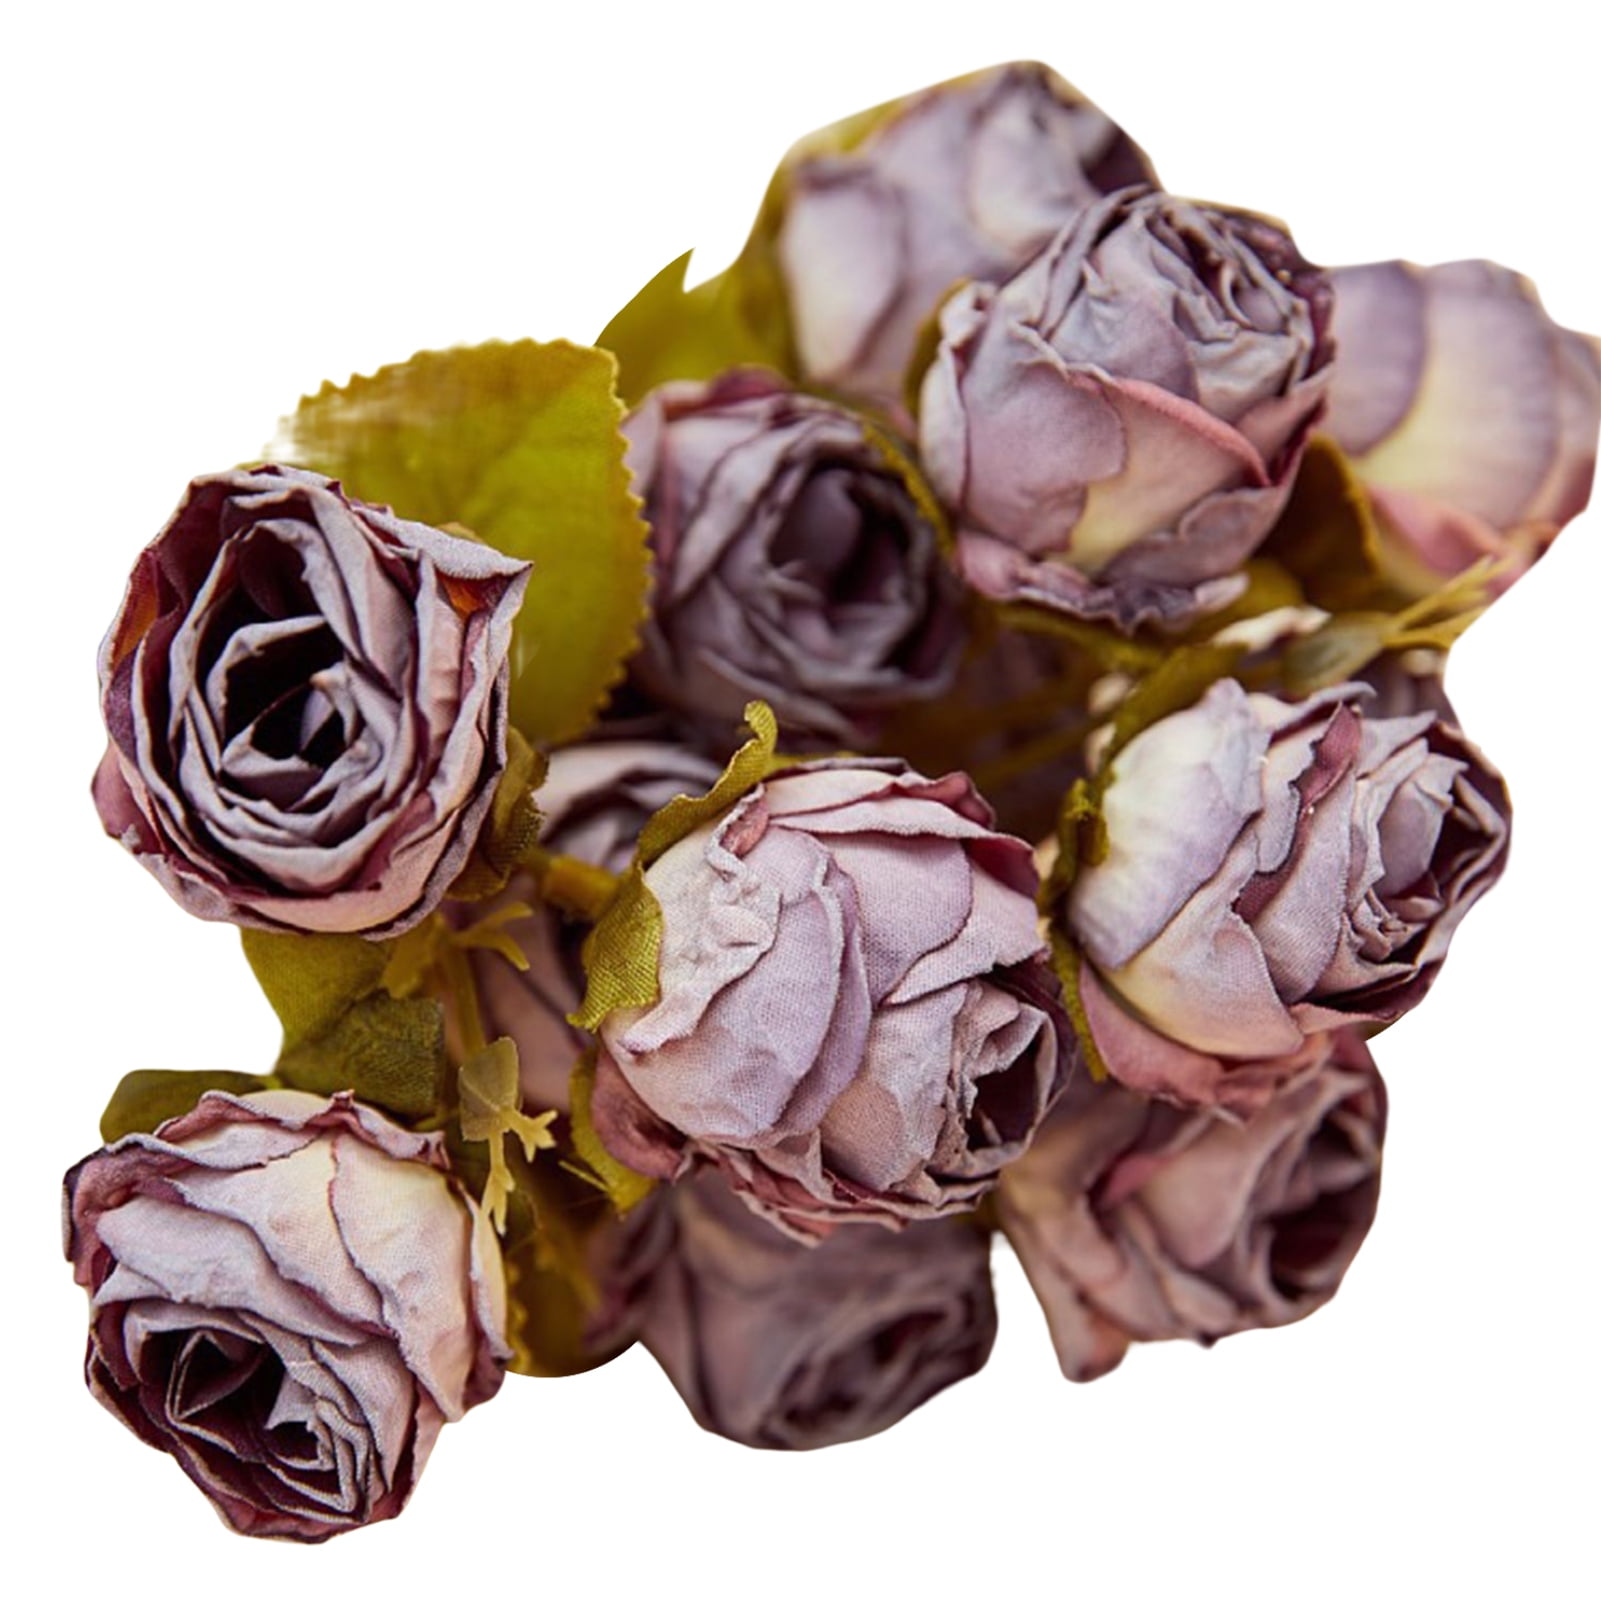 IUKnot Artificial Rose 10pcs Open Flower Bouquet Faux Rose Stems for Wedding Arrangement, Bridal Bouquet, Centerpiece, Fake Faux Silk Flowers (Dusty